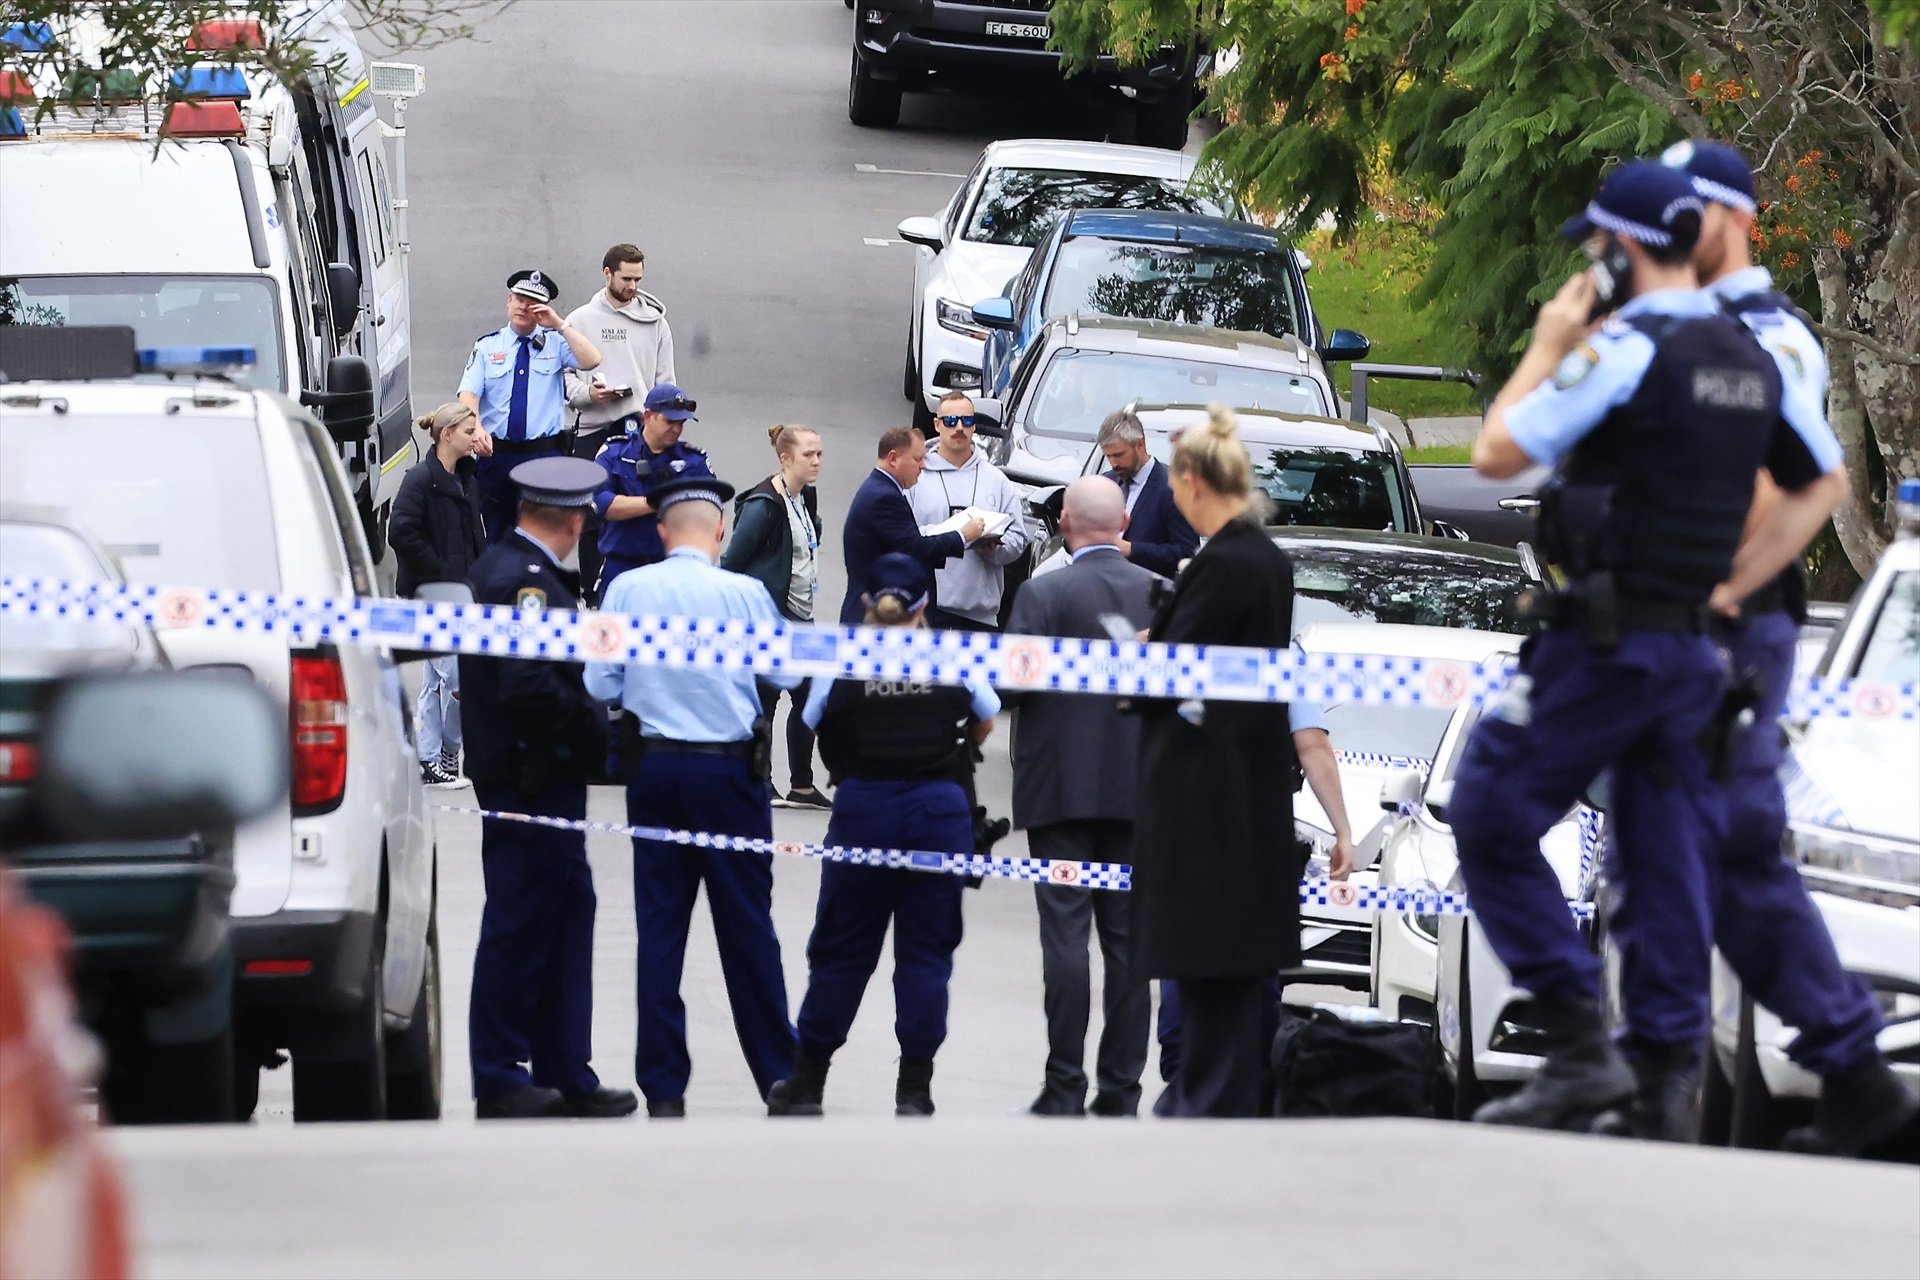 Vista general de la policia després del tiroteig de Sydney / Aapimage - Dpa